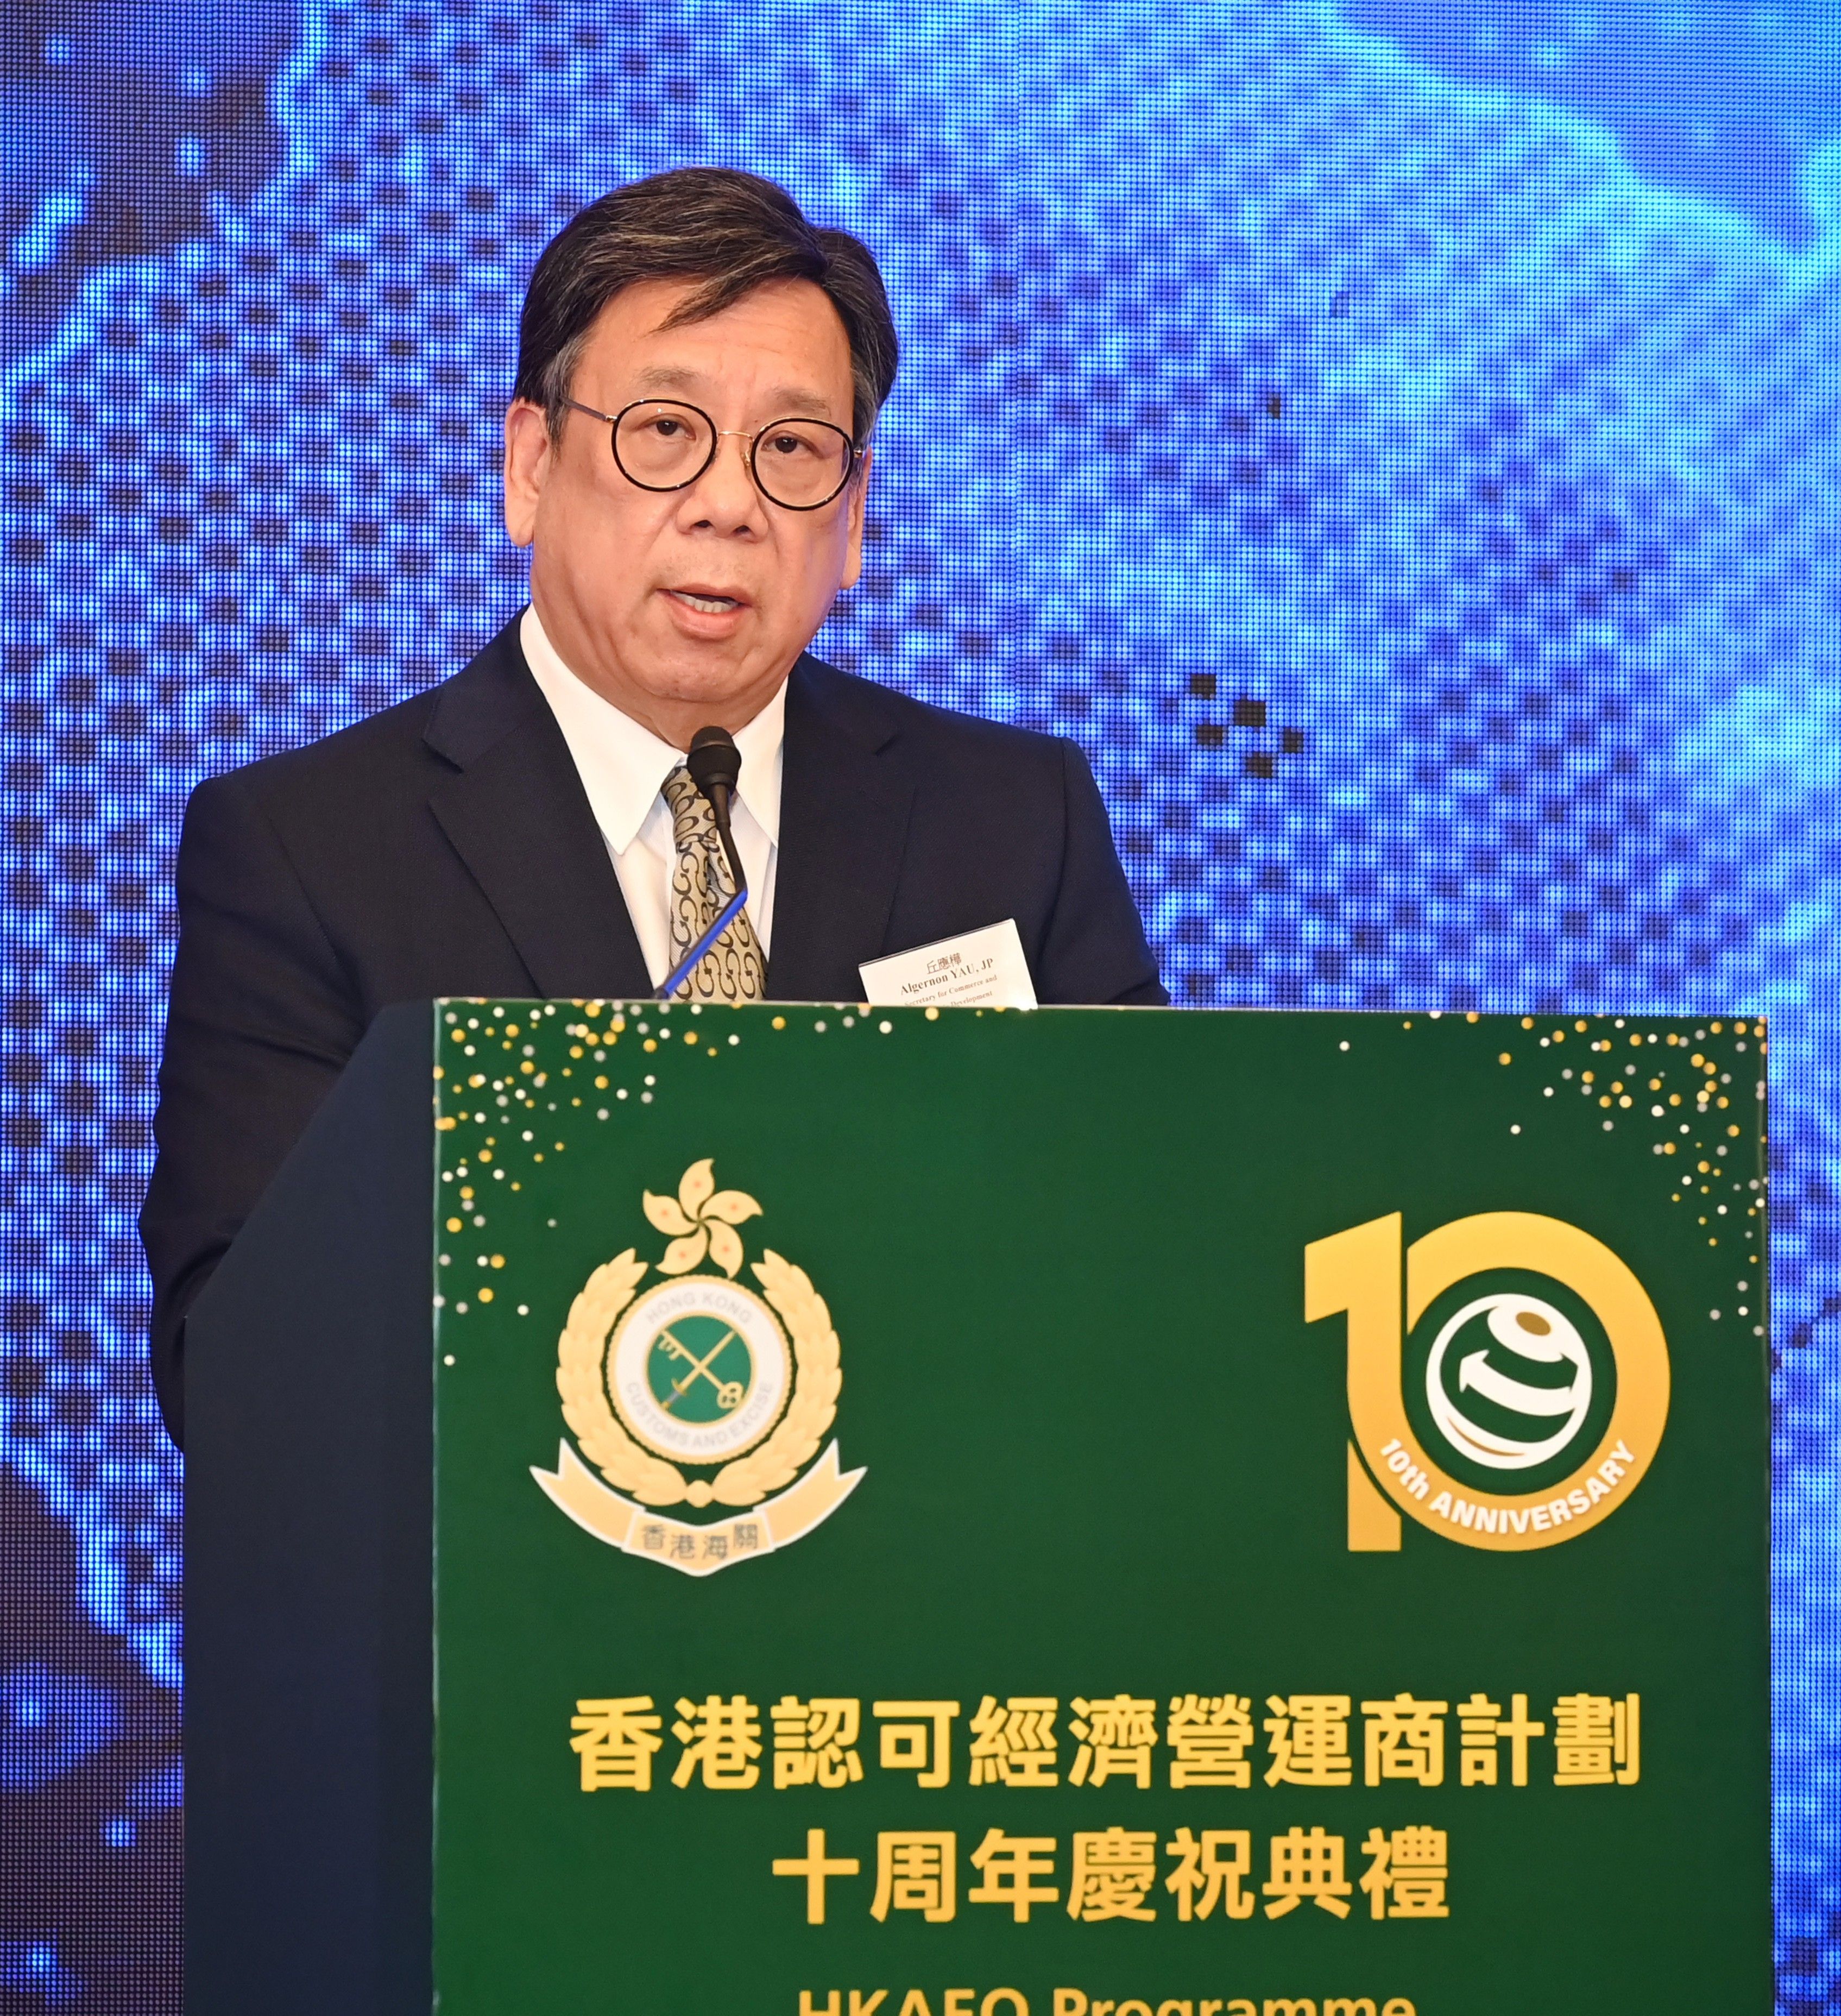 商務及經濟發展局局長丘應樺在典禮致辭中，讚揚「香港認可經濟營運商計劃」推行十載的發展和成就。